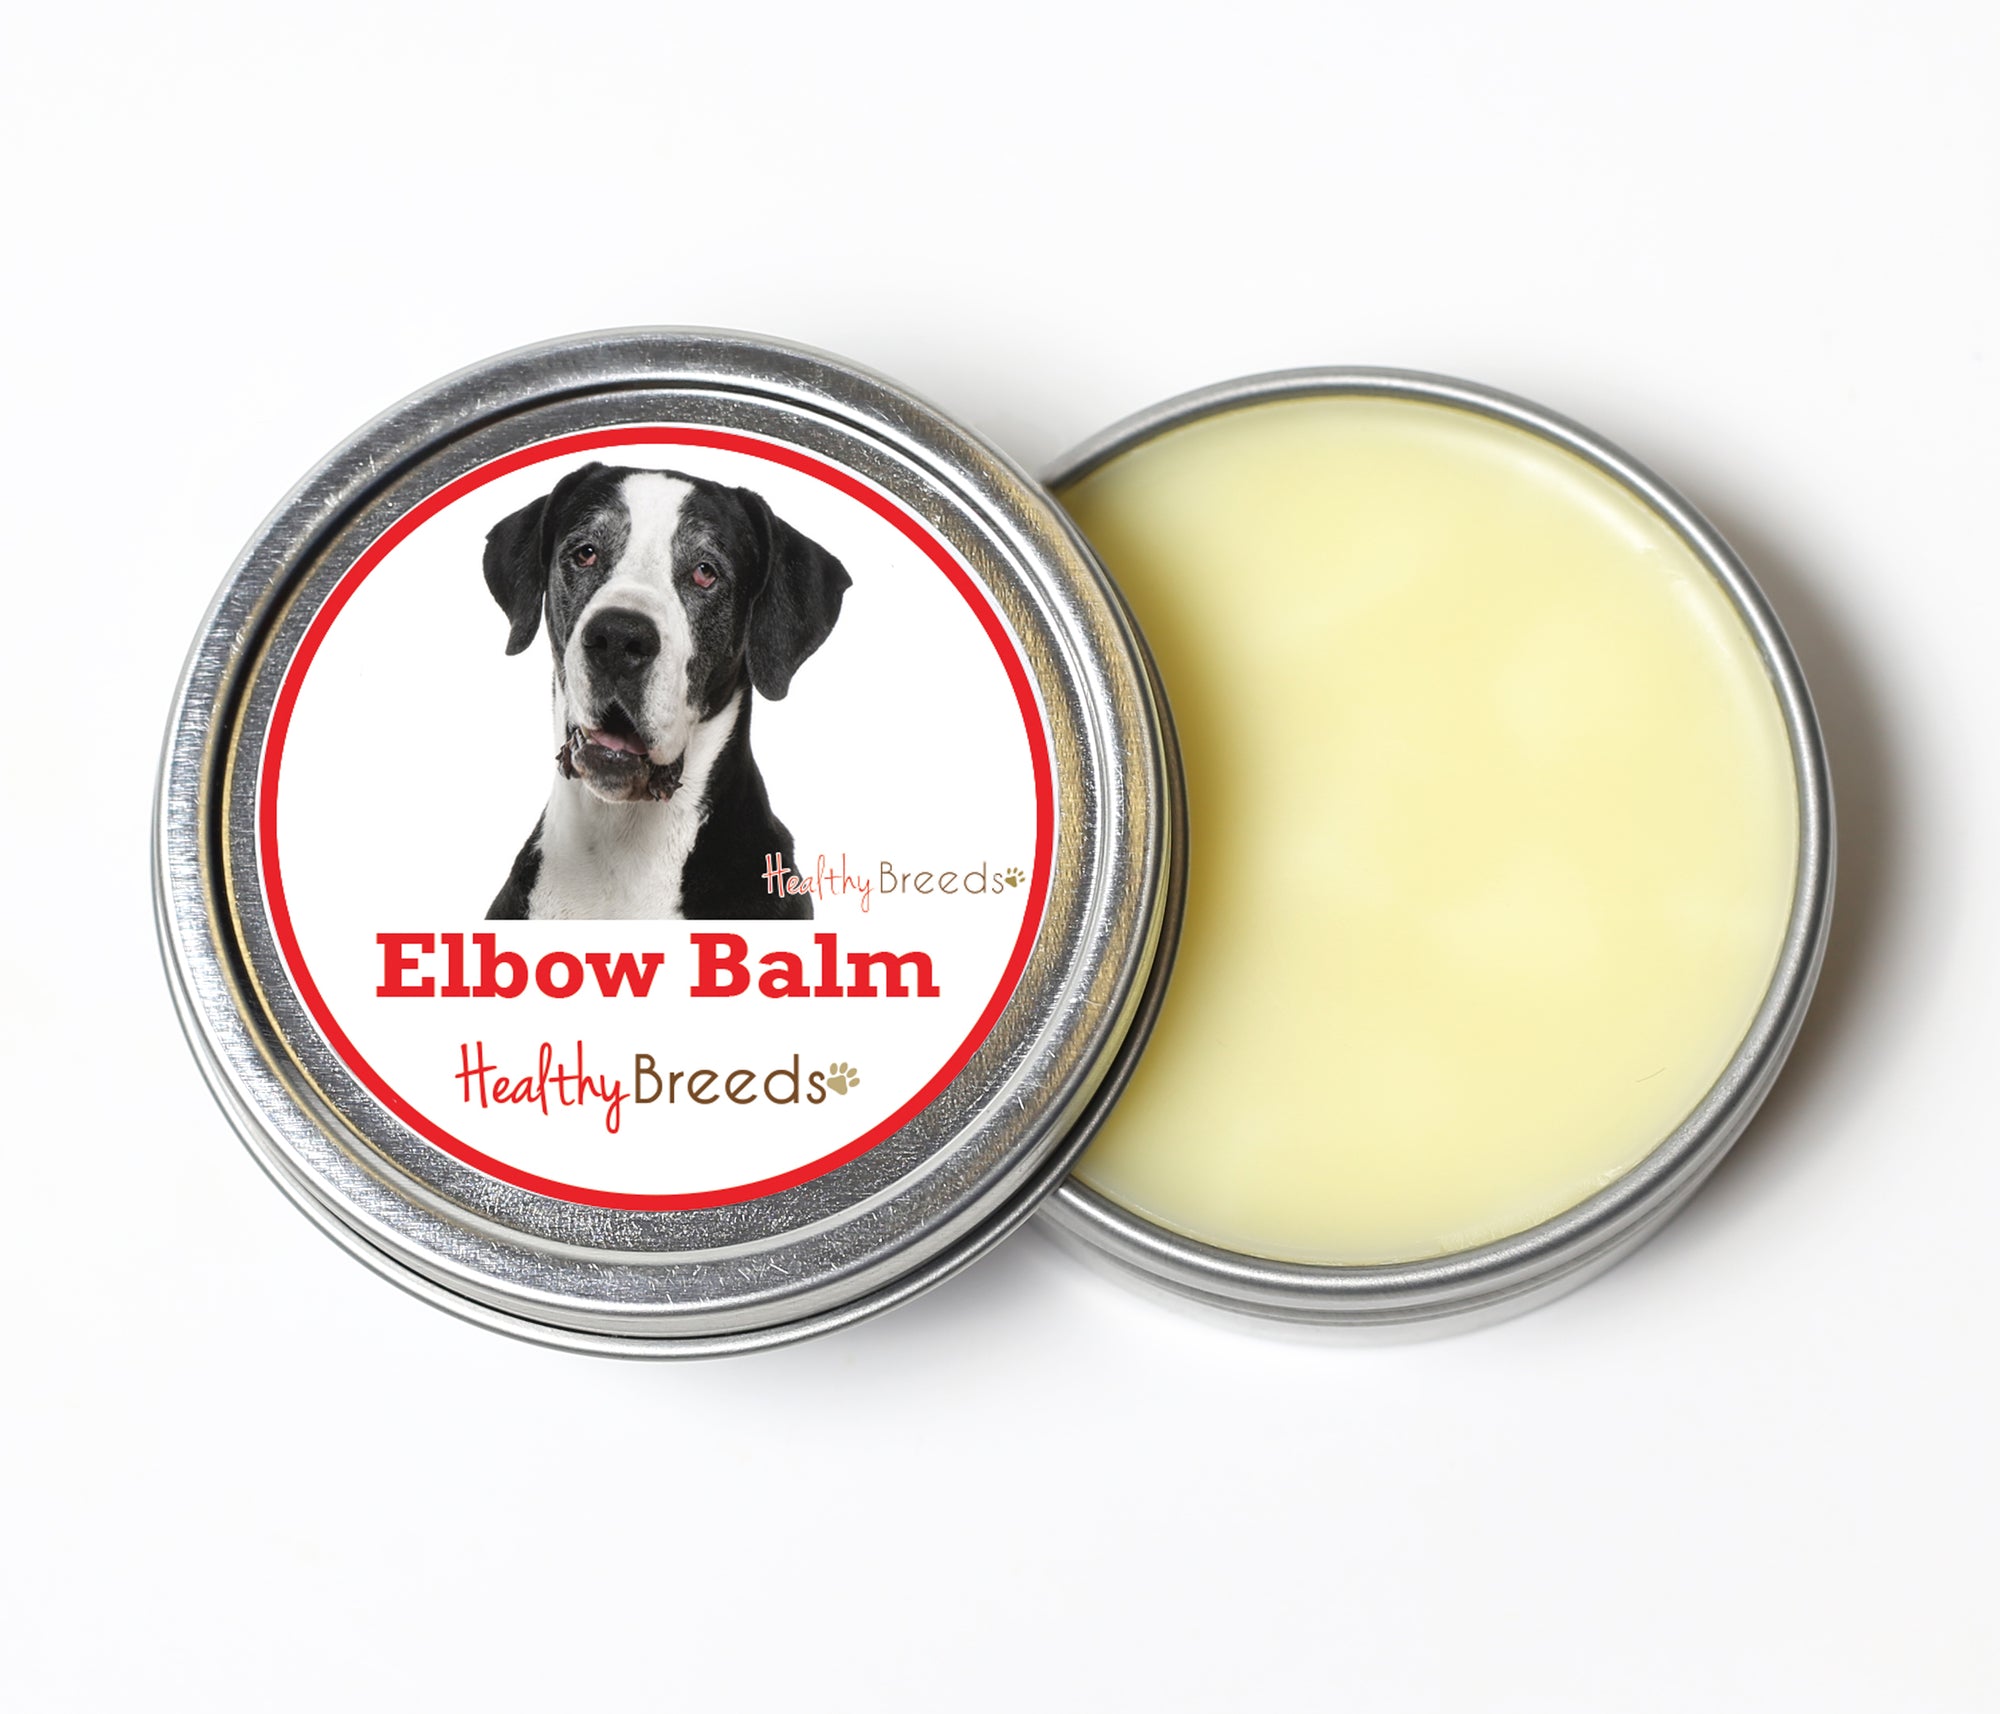 Healthy Breeds Great Dane Dog Elbow Balm 2 oz